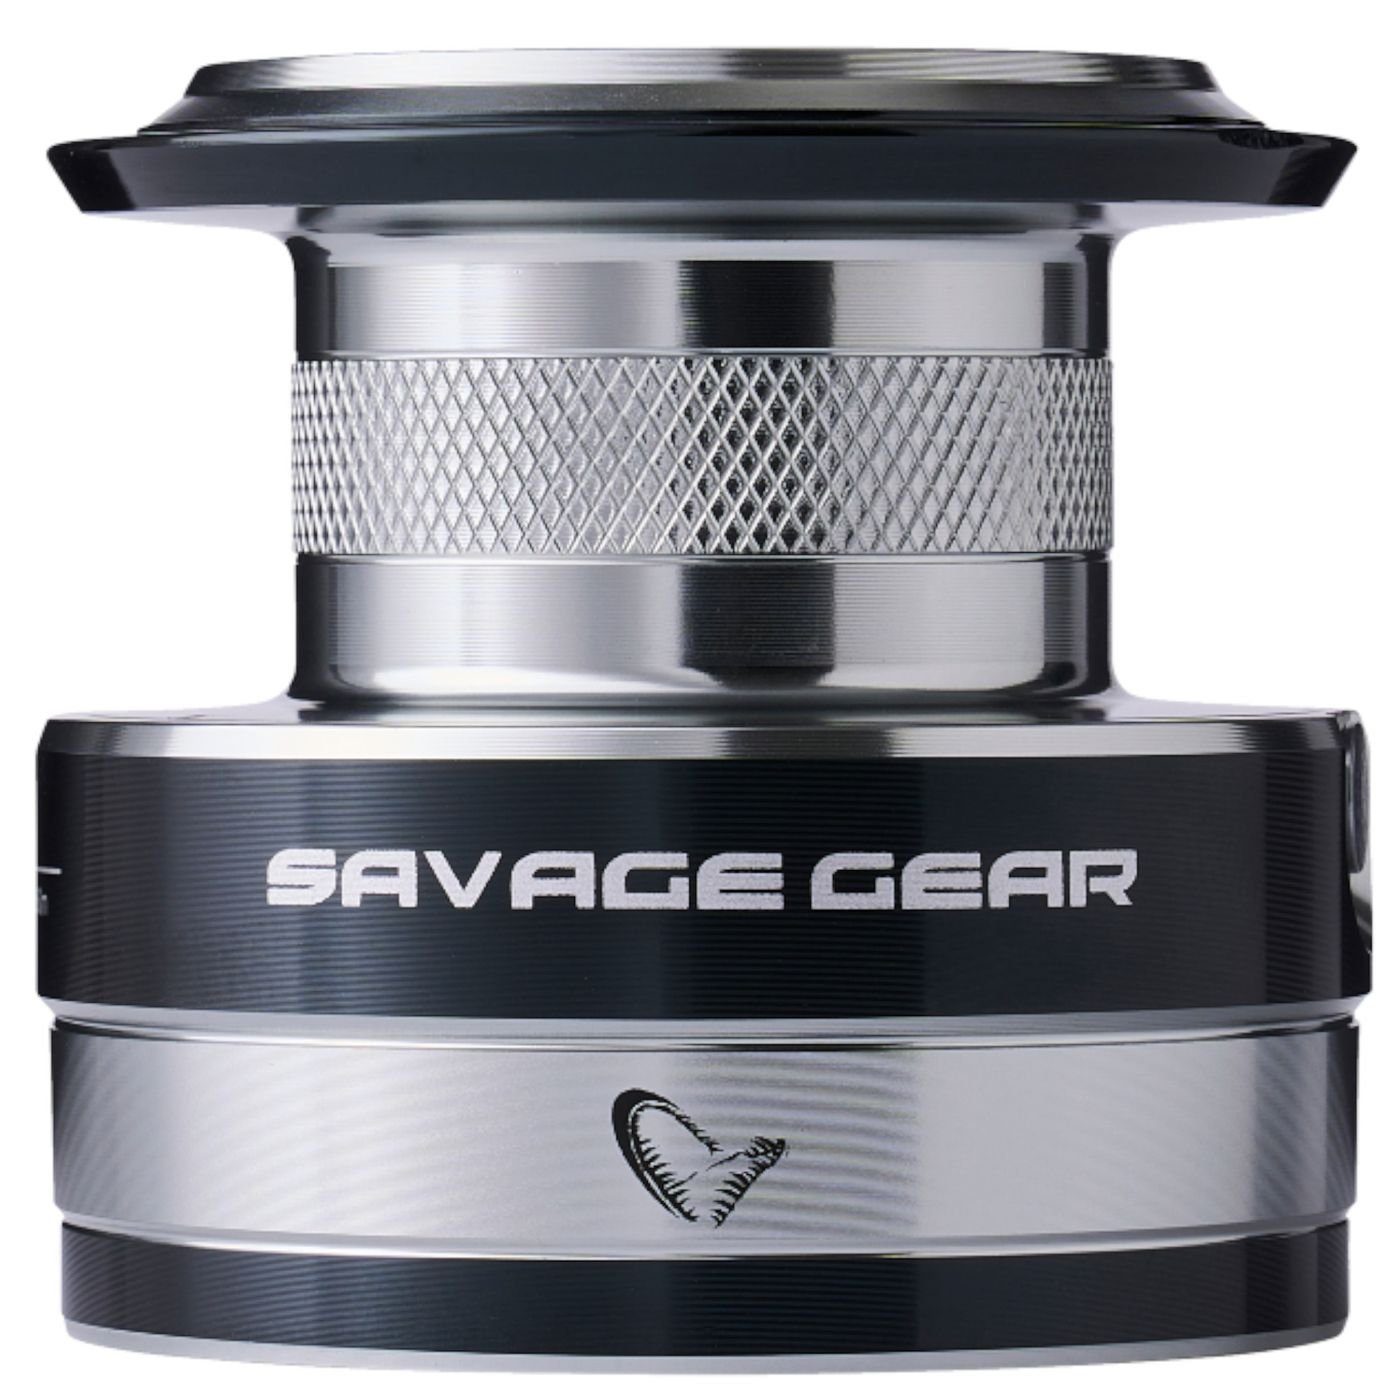 SGS8 Stationärrolle 5000 Savage Gear - FD Reservespule) Spare Spool